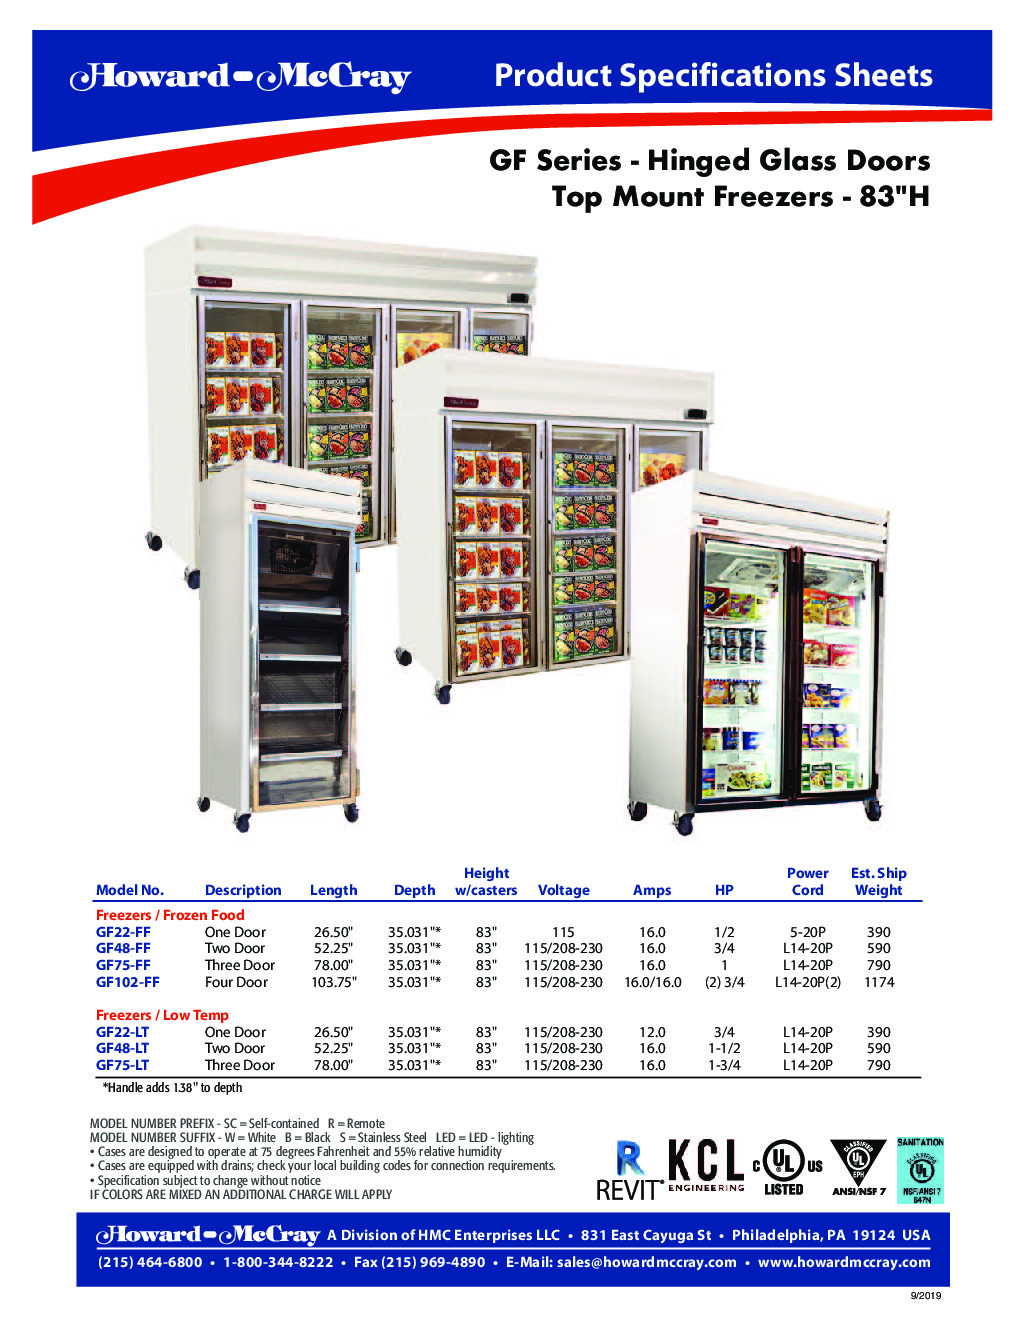 Howard-McCray GF75-LT Merchandiser Freezer